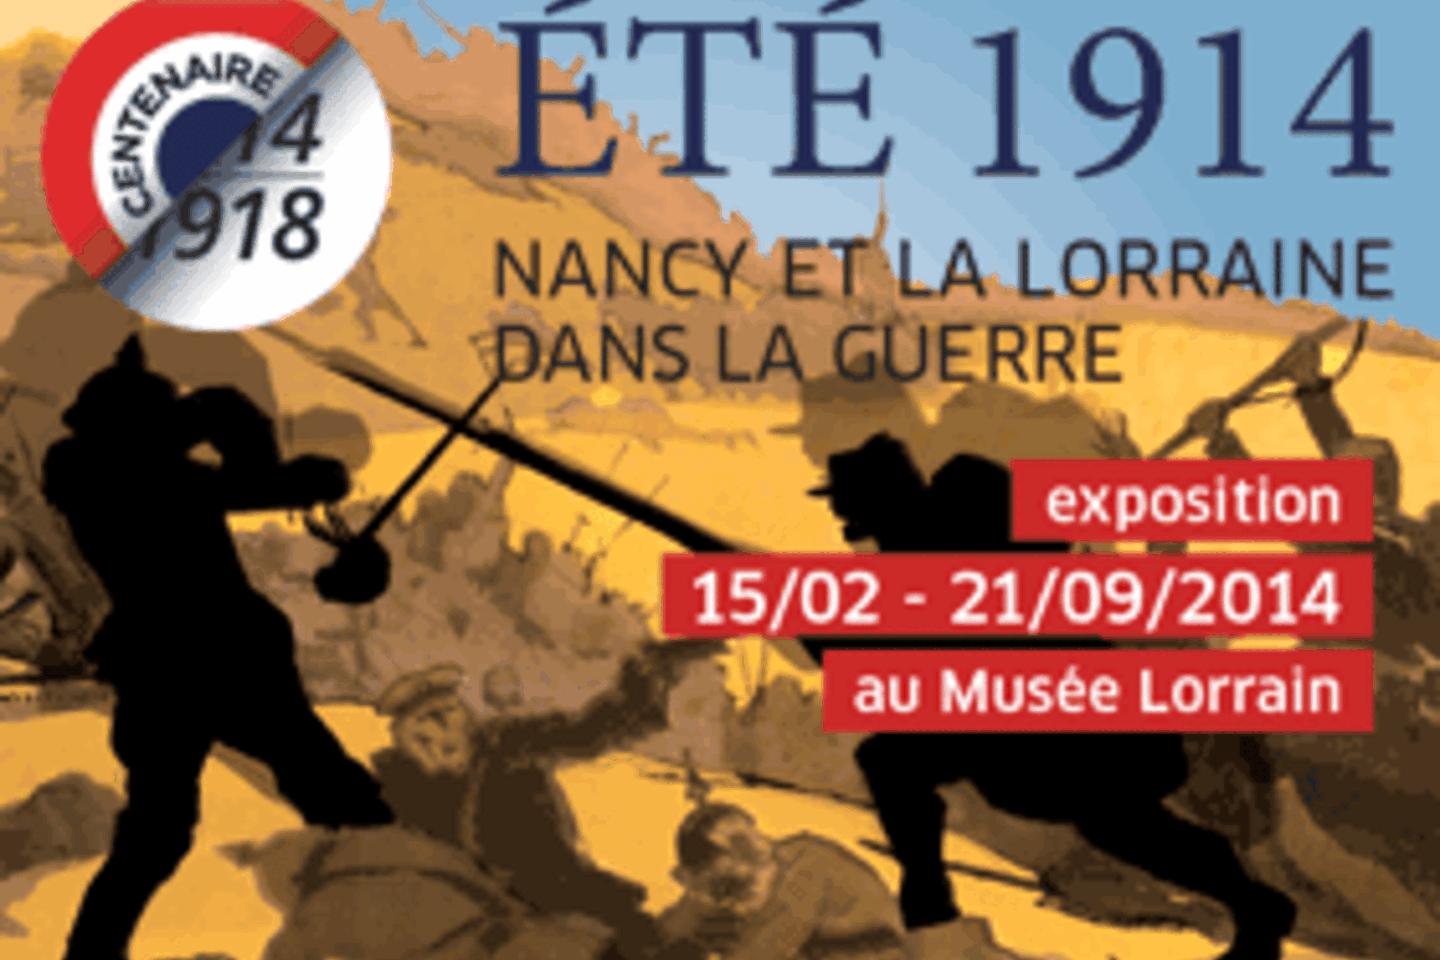 Exposition Eté 1914, Nancy et la Lorraine dans la guerre